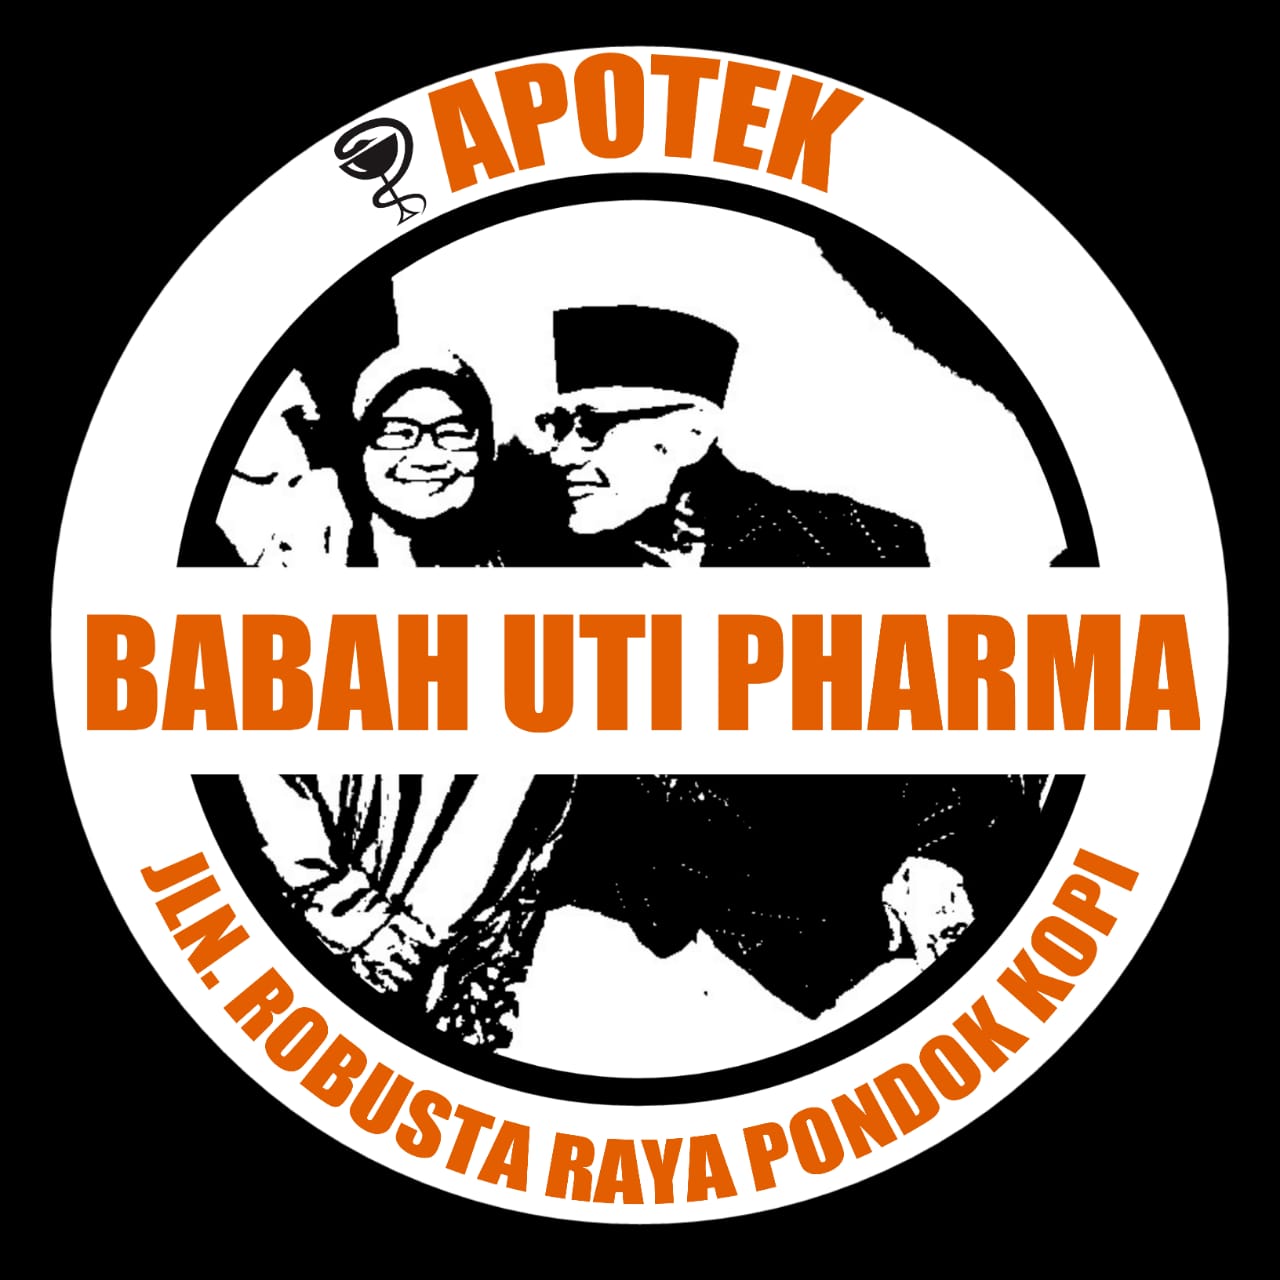 Apotek Babah Uti Pharma